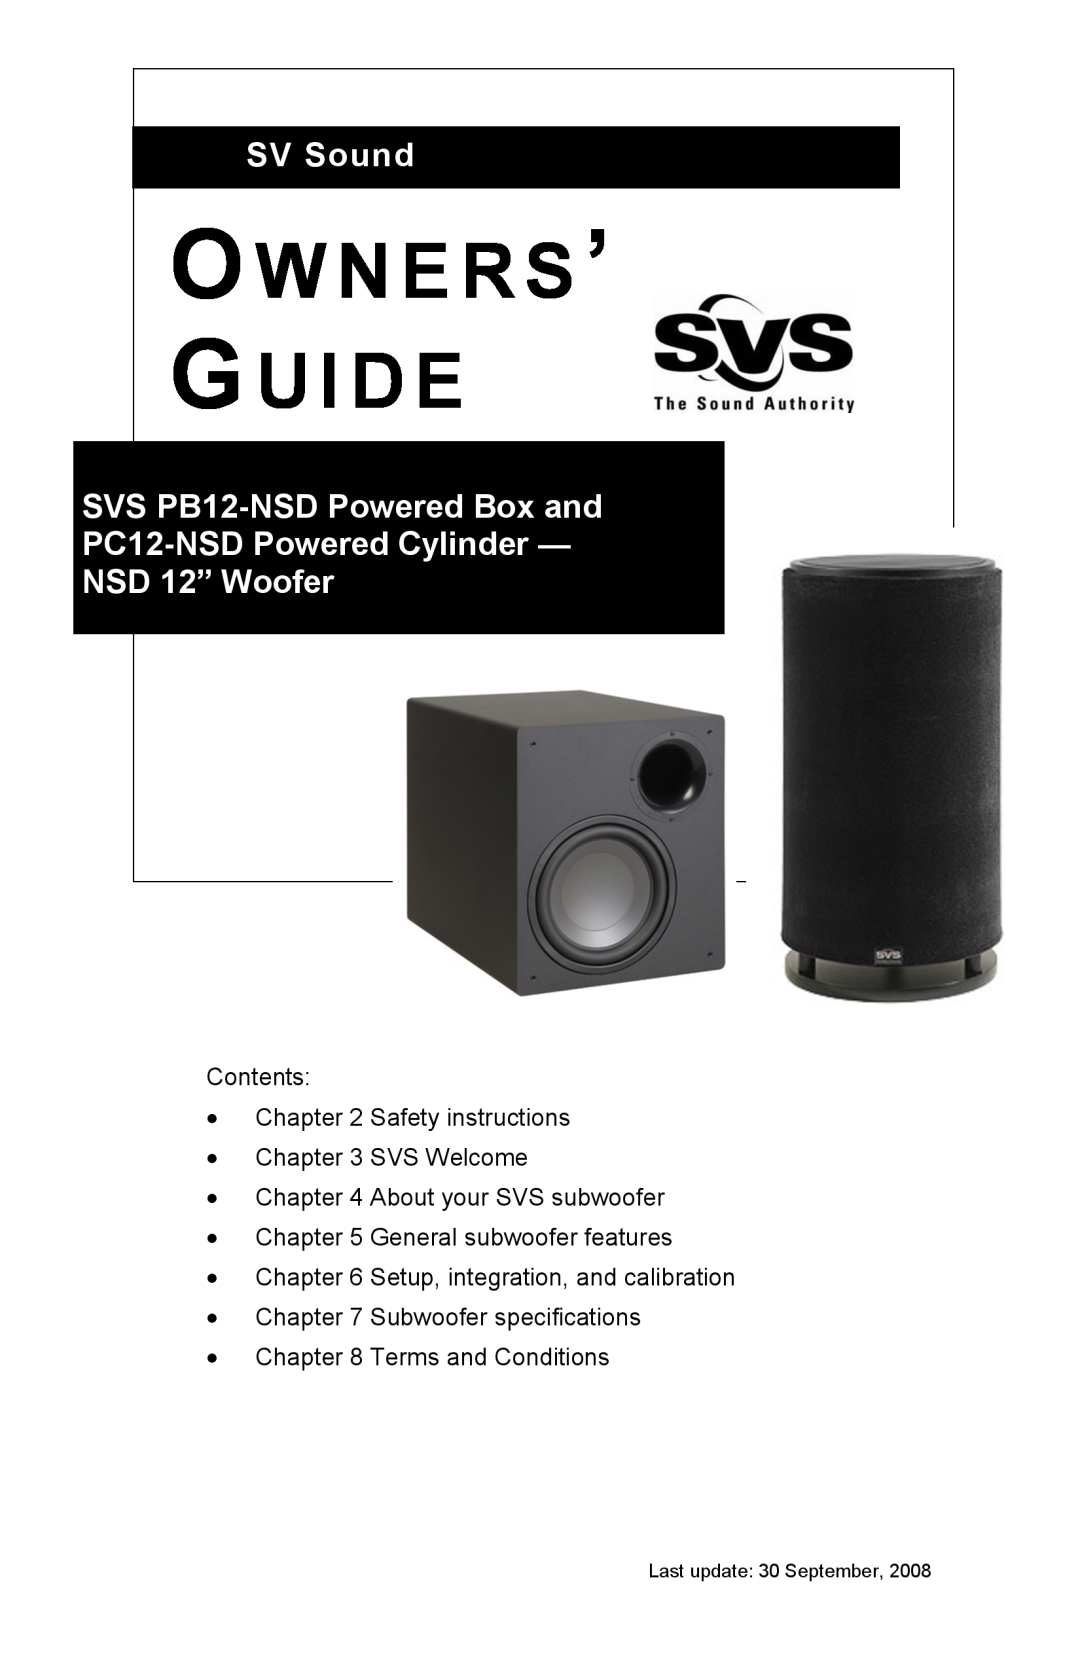 SV Sound PB12-NSD, PC12-NSD, SB12-NSD manual Manual Version 1.4 June, STA-400DEquipped Subs, SV Sound, LLC 